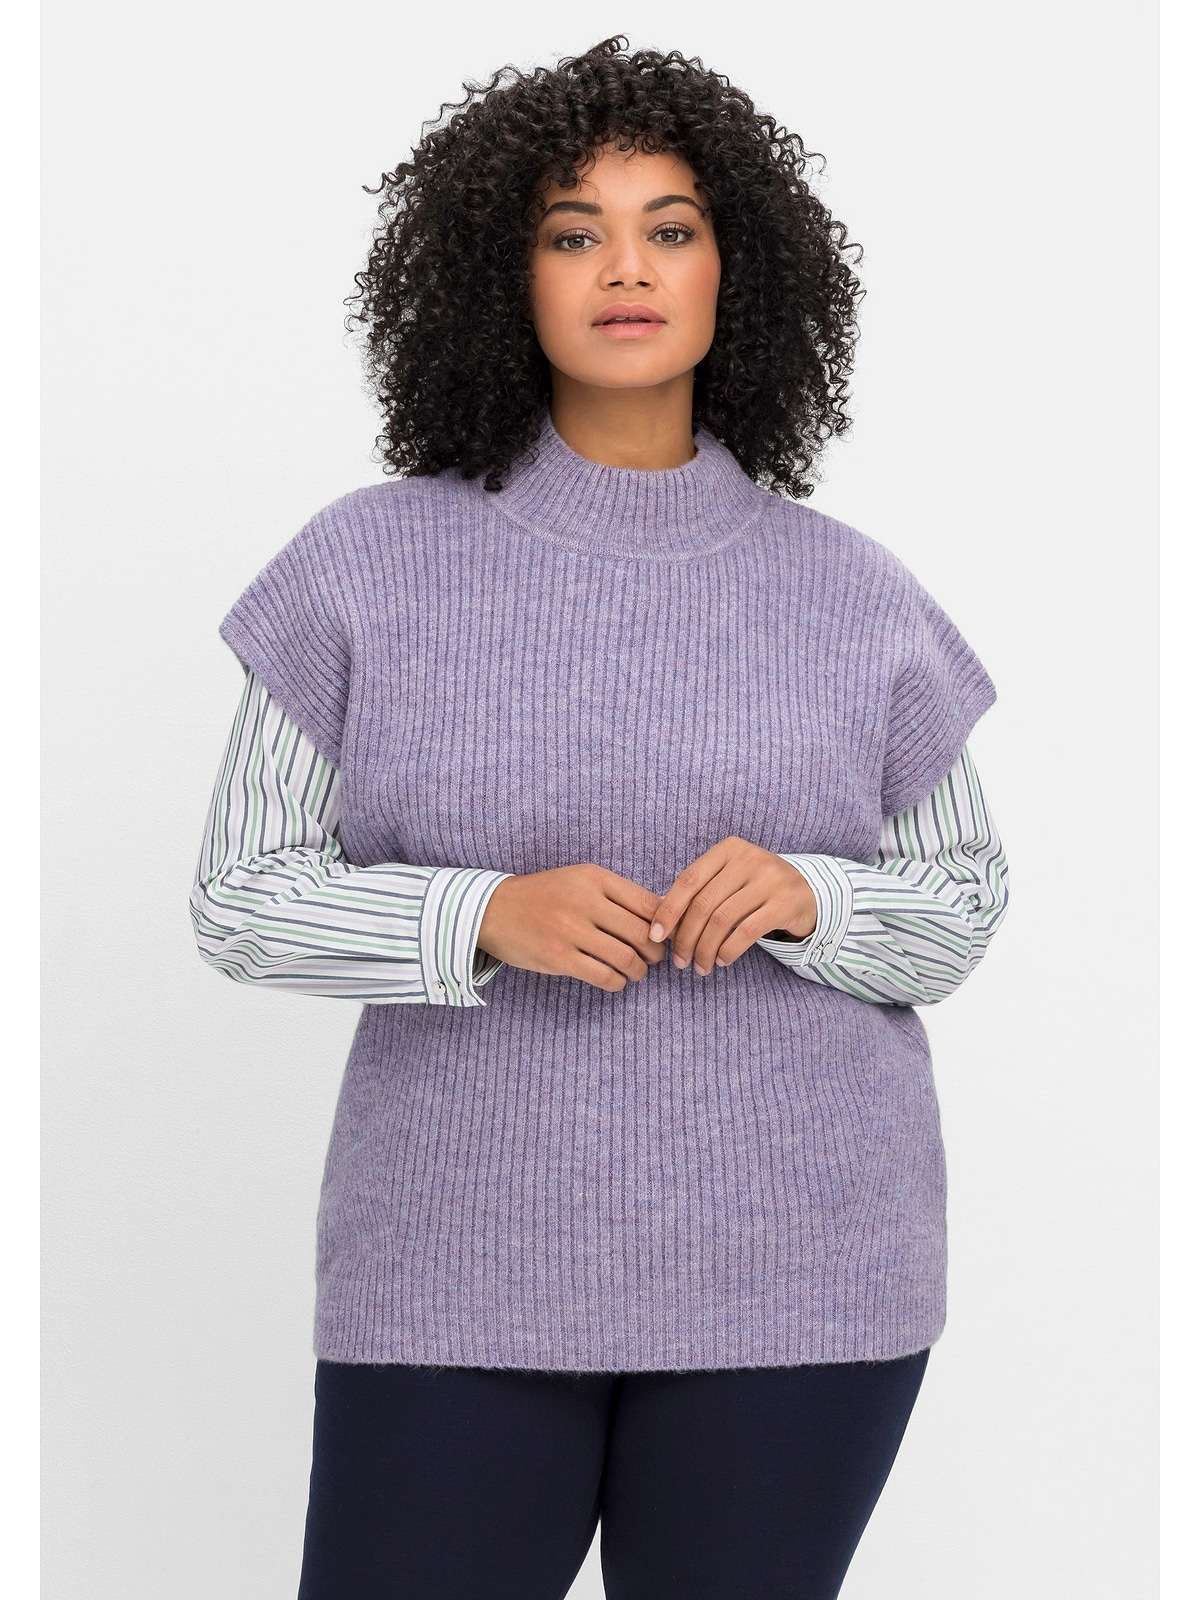 Жилет-свитер, с воротником стойкой, в рубчатую структуру.